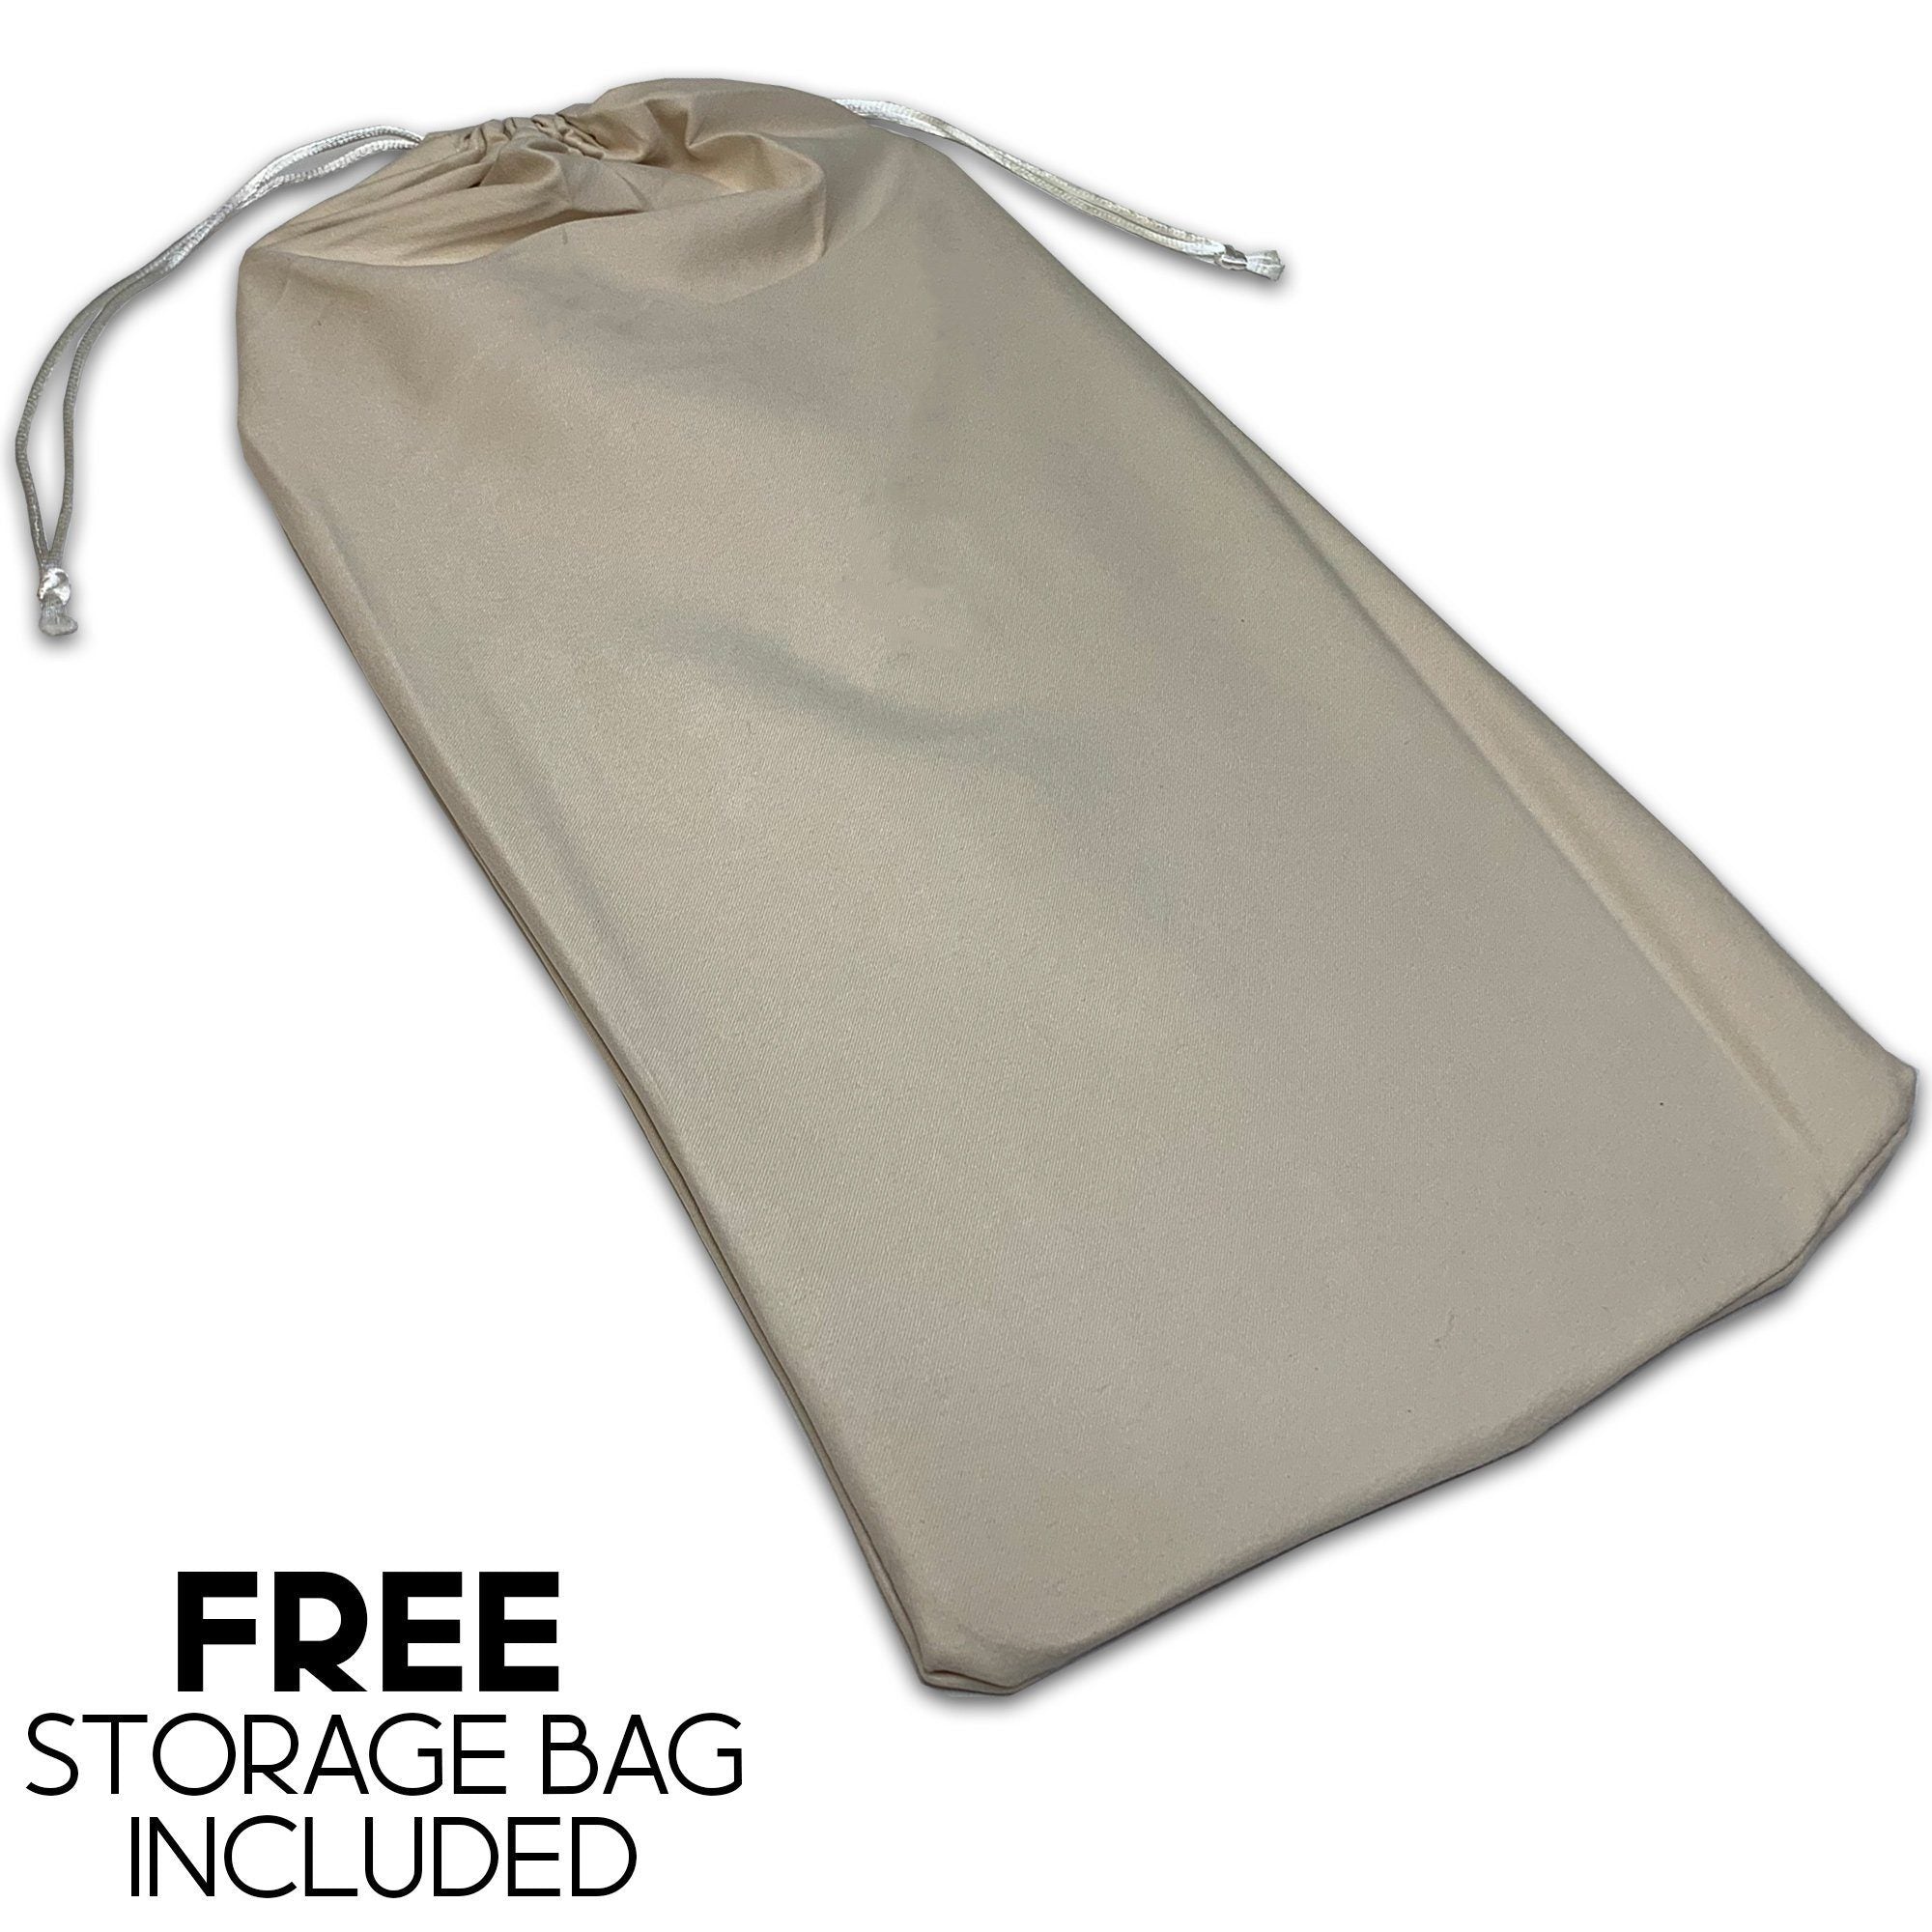 Base Shaper / Bag Insert Saver For Louis Vuitton Multi Pochette Accessoires  in Canvas Version